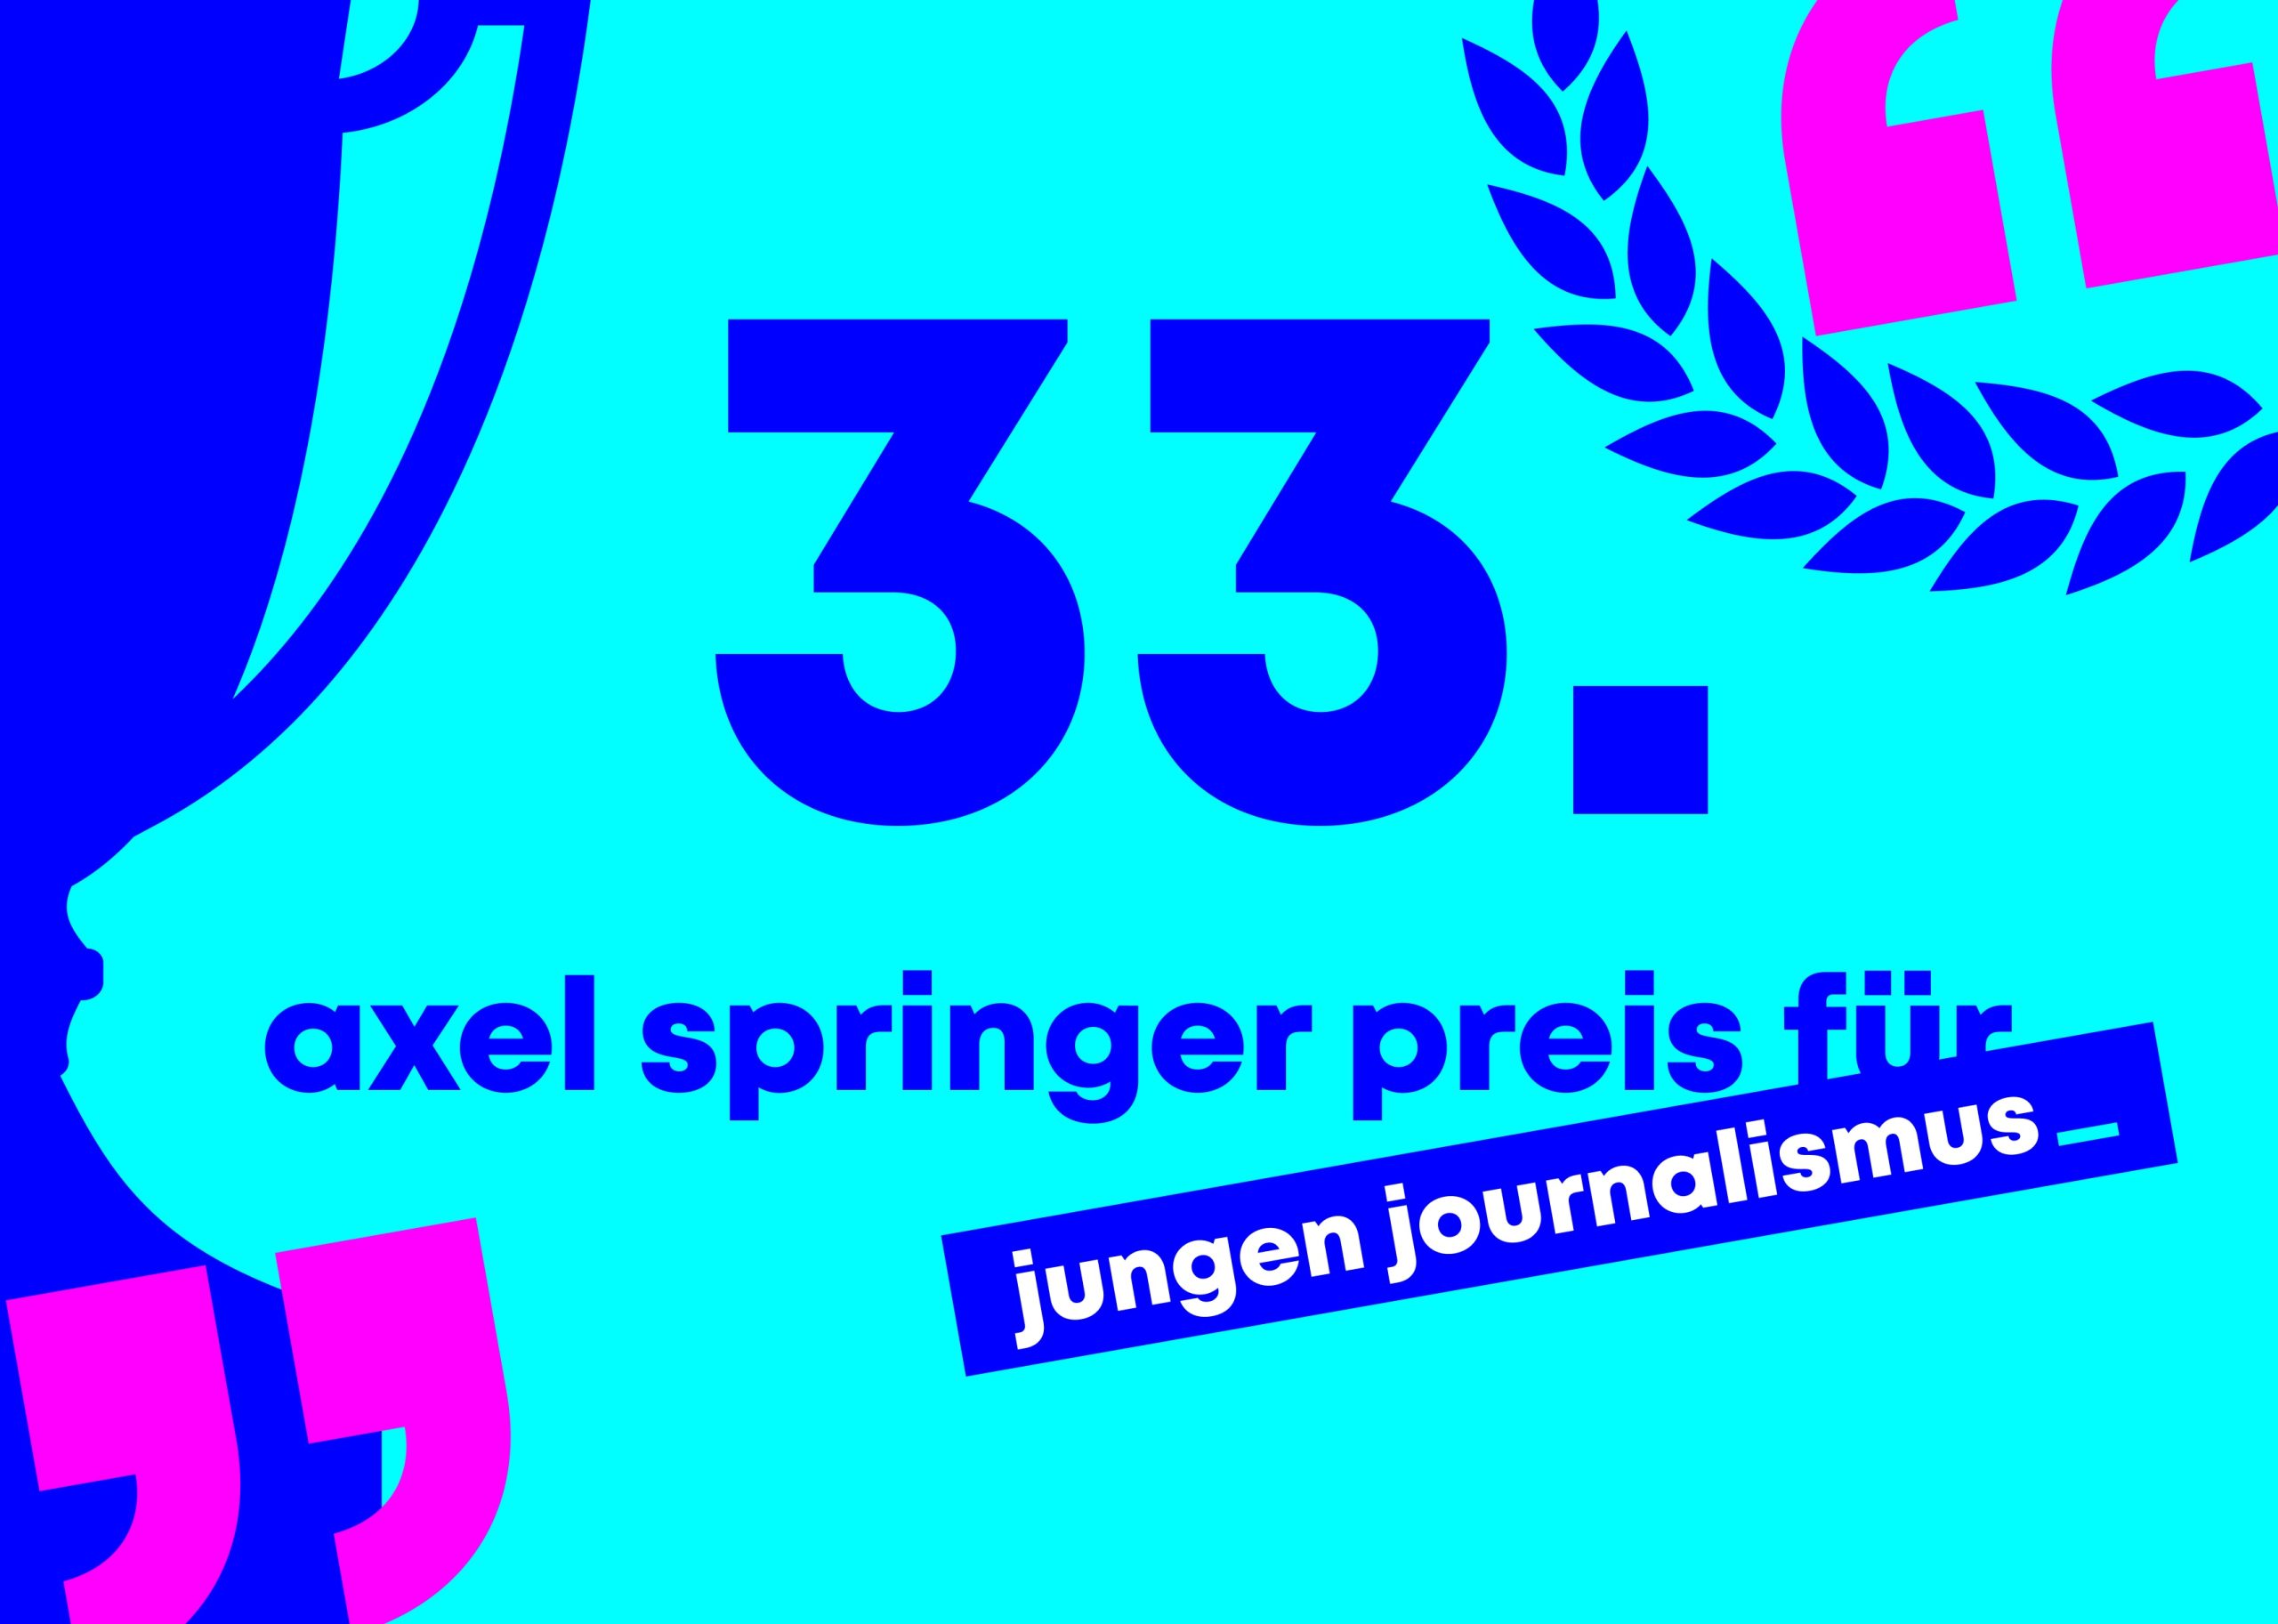 Axel-Springer-Preis für jungen Journalismus ausgeschrieben